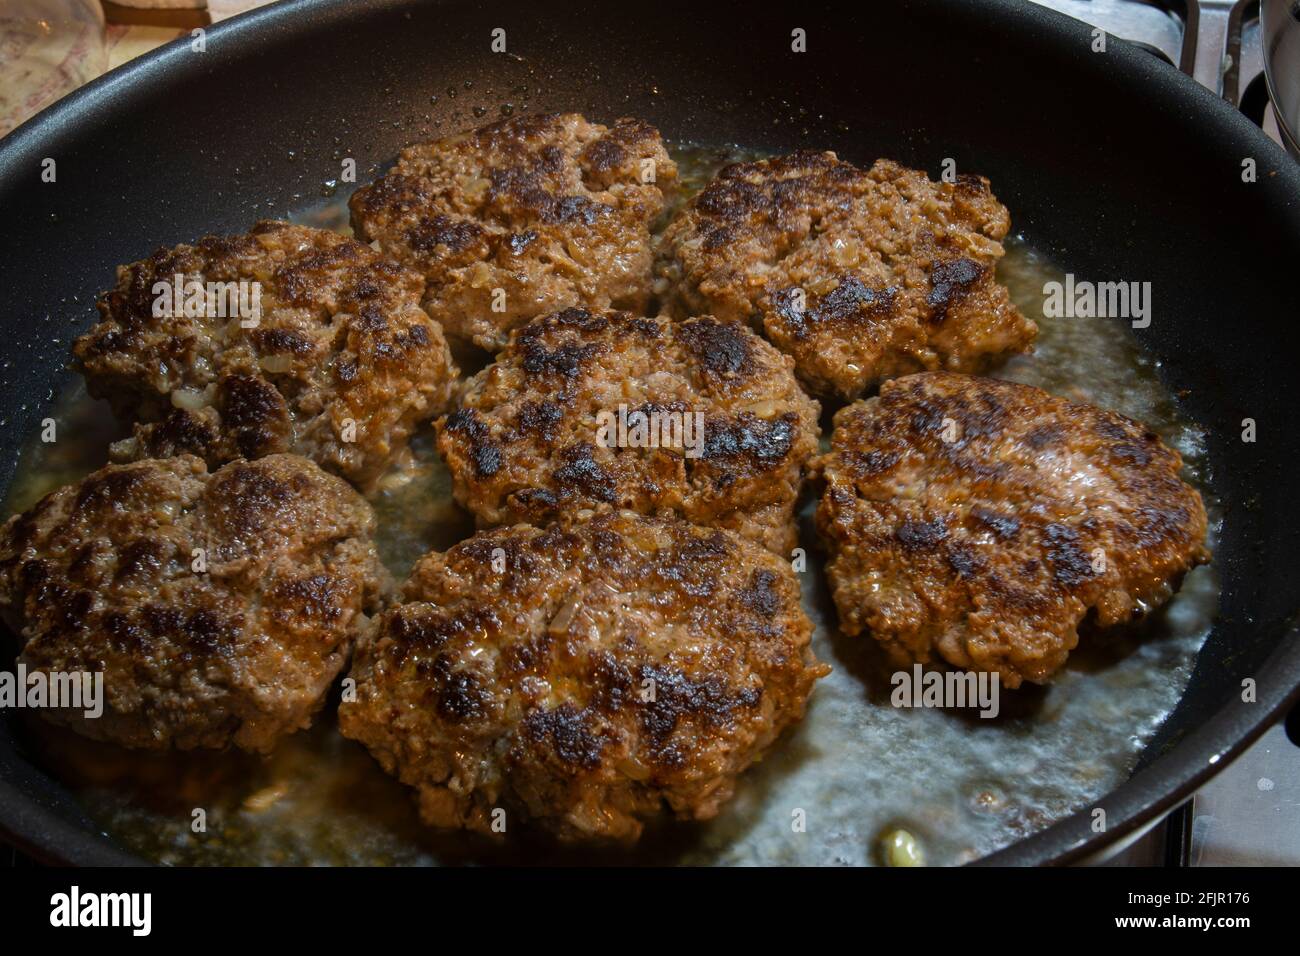 Fertig zum Essen. Hausgemachte Burger-Fleischbällchen werden in einer gusseisernen Pfanne gekocht. Selective Focus Burger Frikadellen. Stockfoto